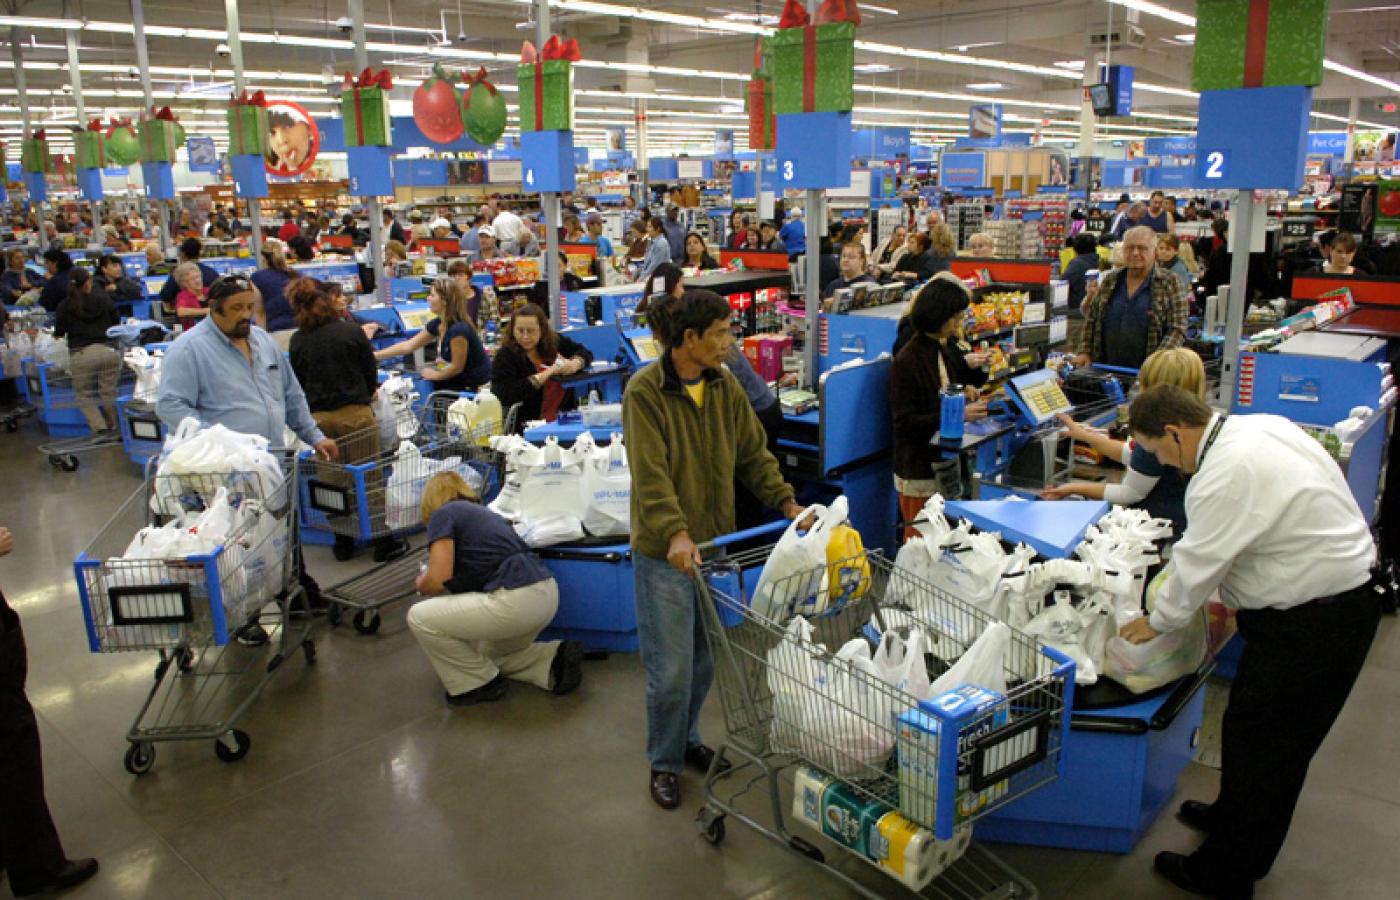 Wal-Mart utrzymuje, że jest po stronie ciężko pracujących rodzin, które muszą oszczędzać każdego centa